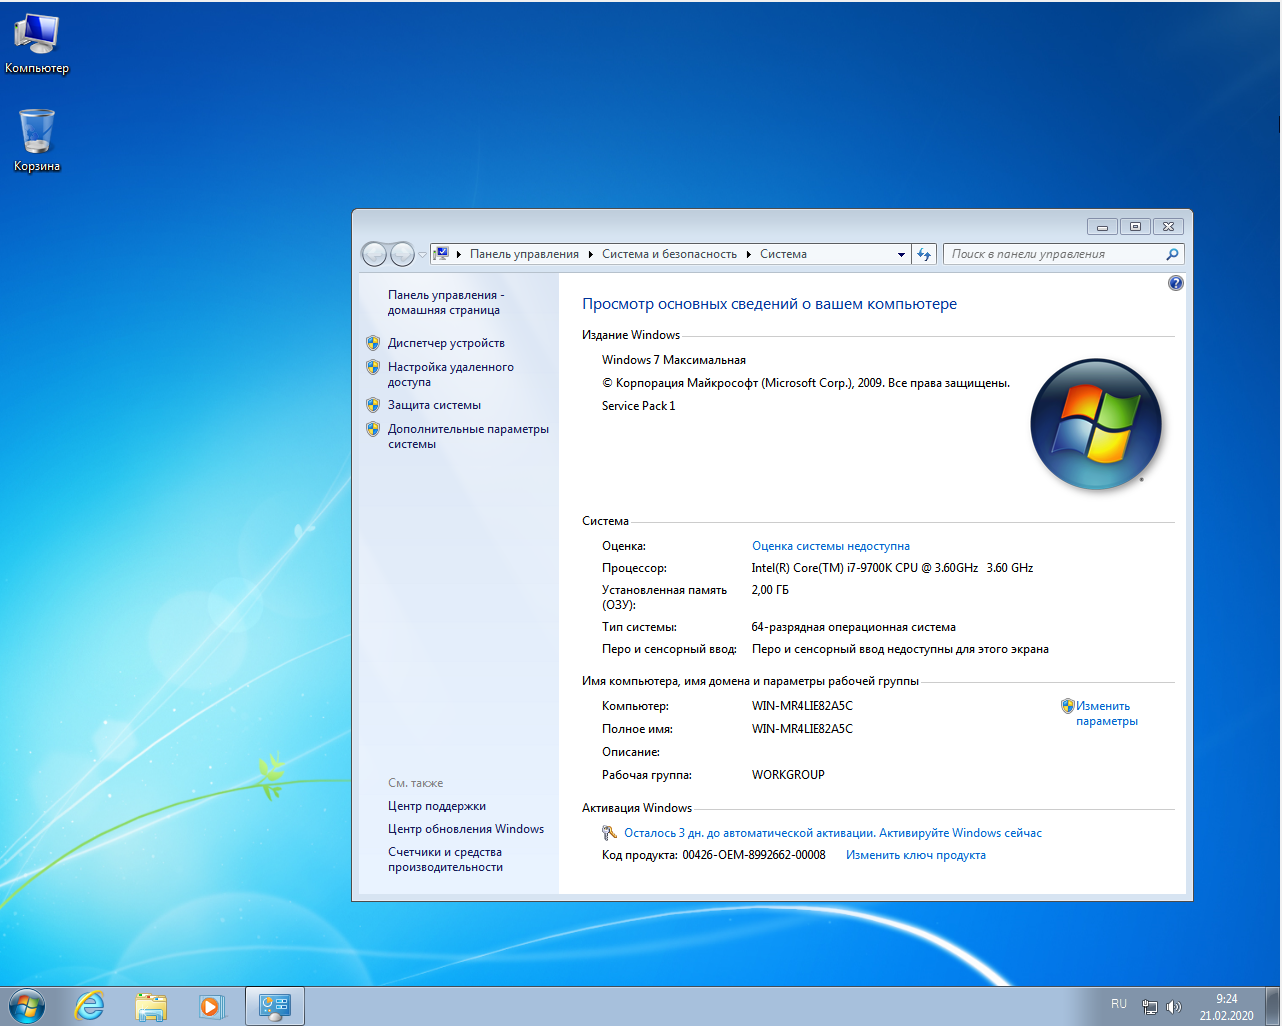 Место занимаемое windows 7. 64-Разрядная Операционная система, процессор x64. Папка con. Windows 7 Ultimate ключ. 128 Бит виндовс.